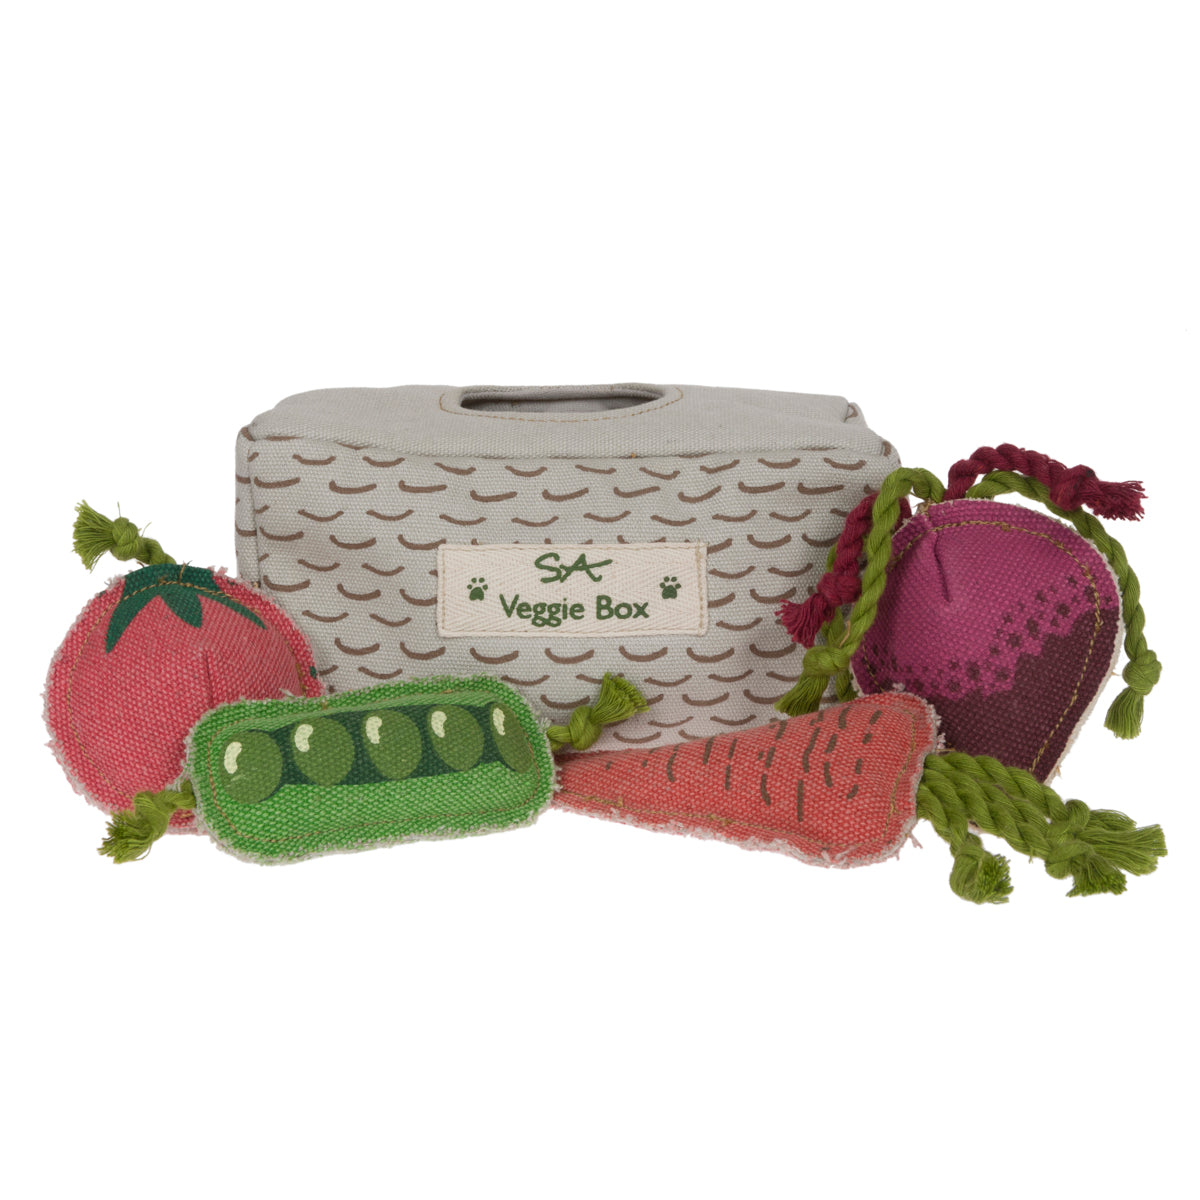 Veggie Box Dog Toy Set by Sophie Allport